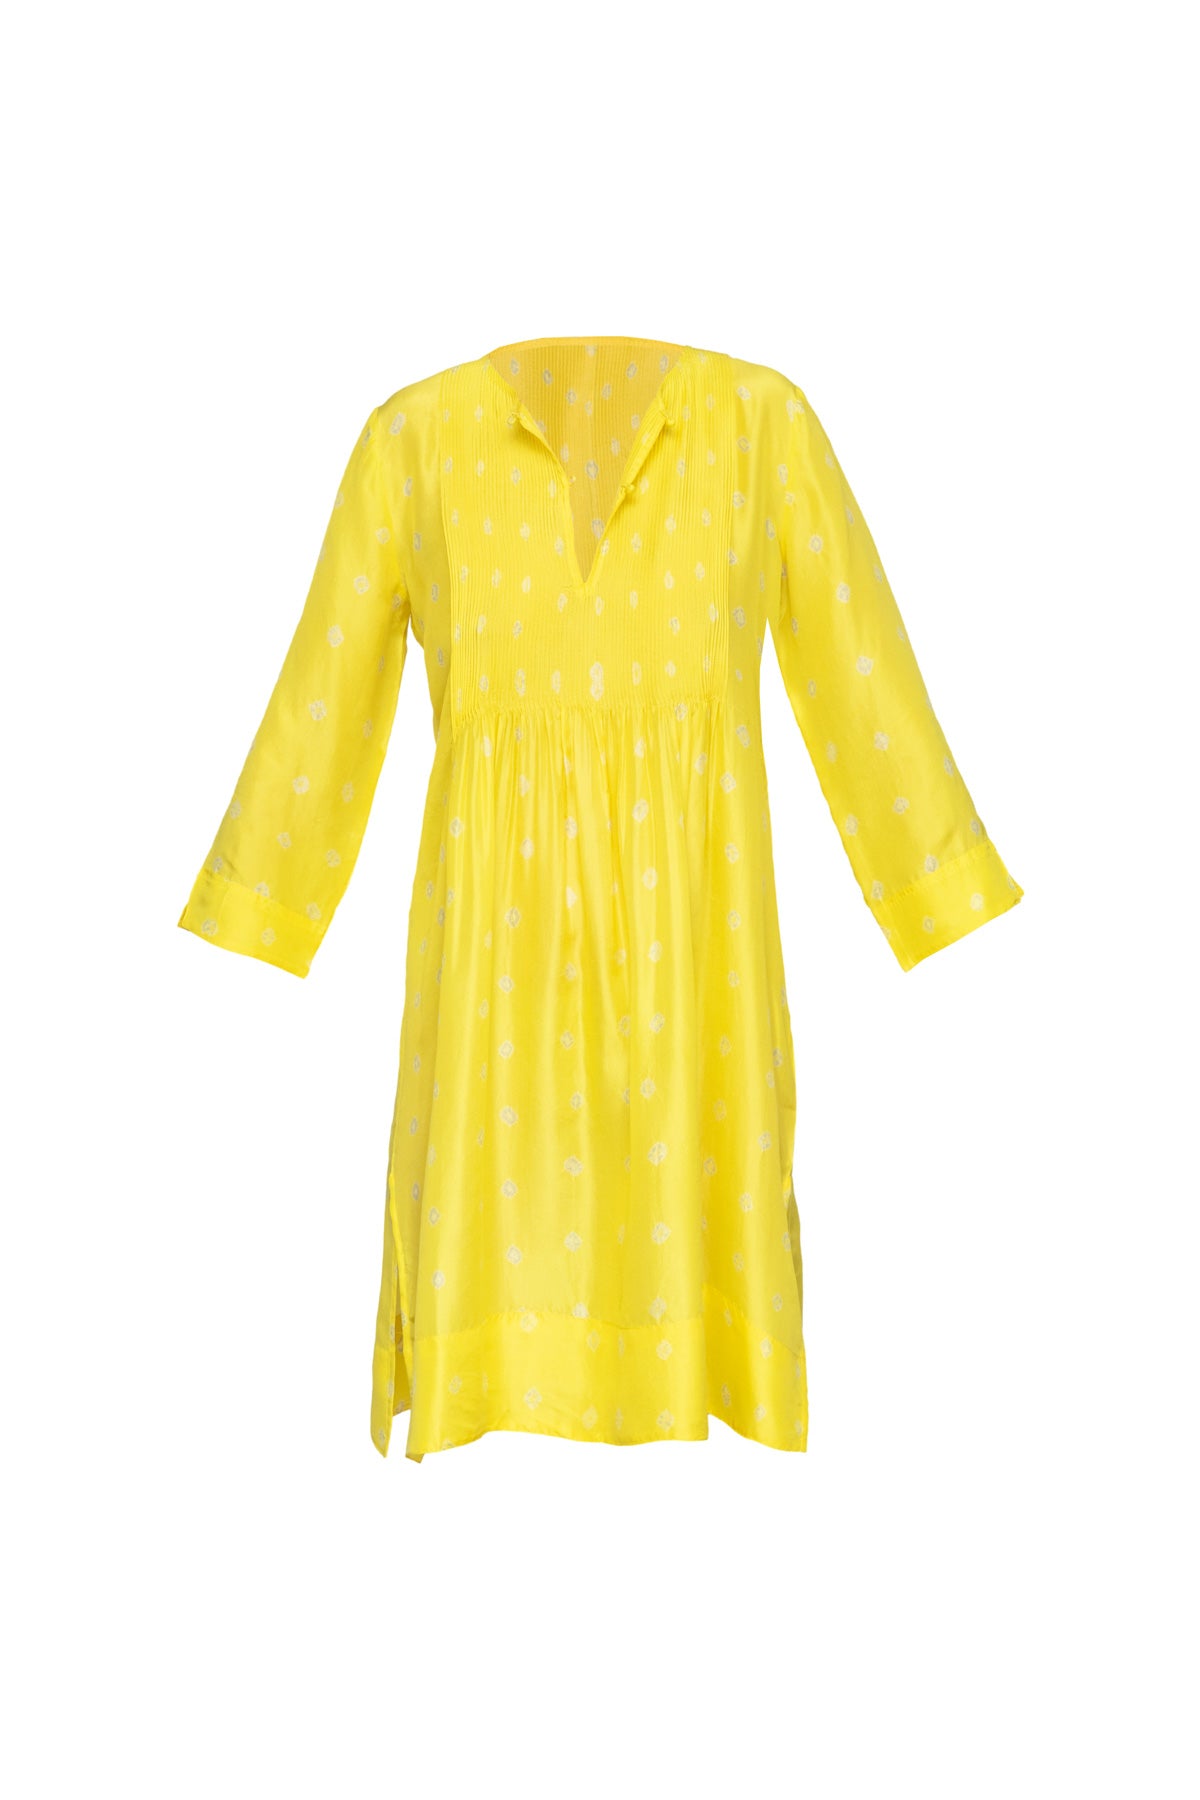 Heidi Silk Short Dress - Lemon